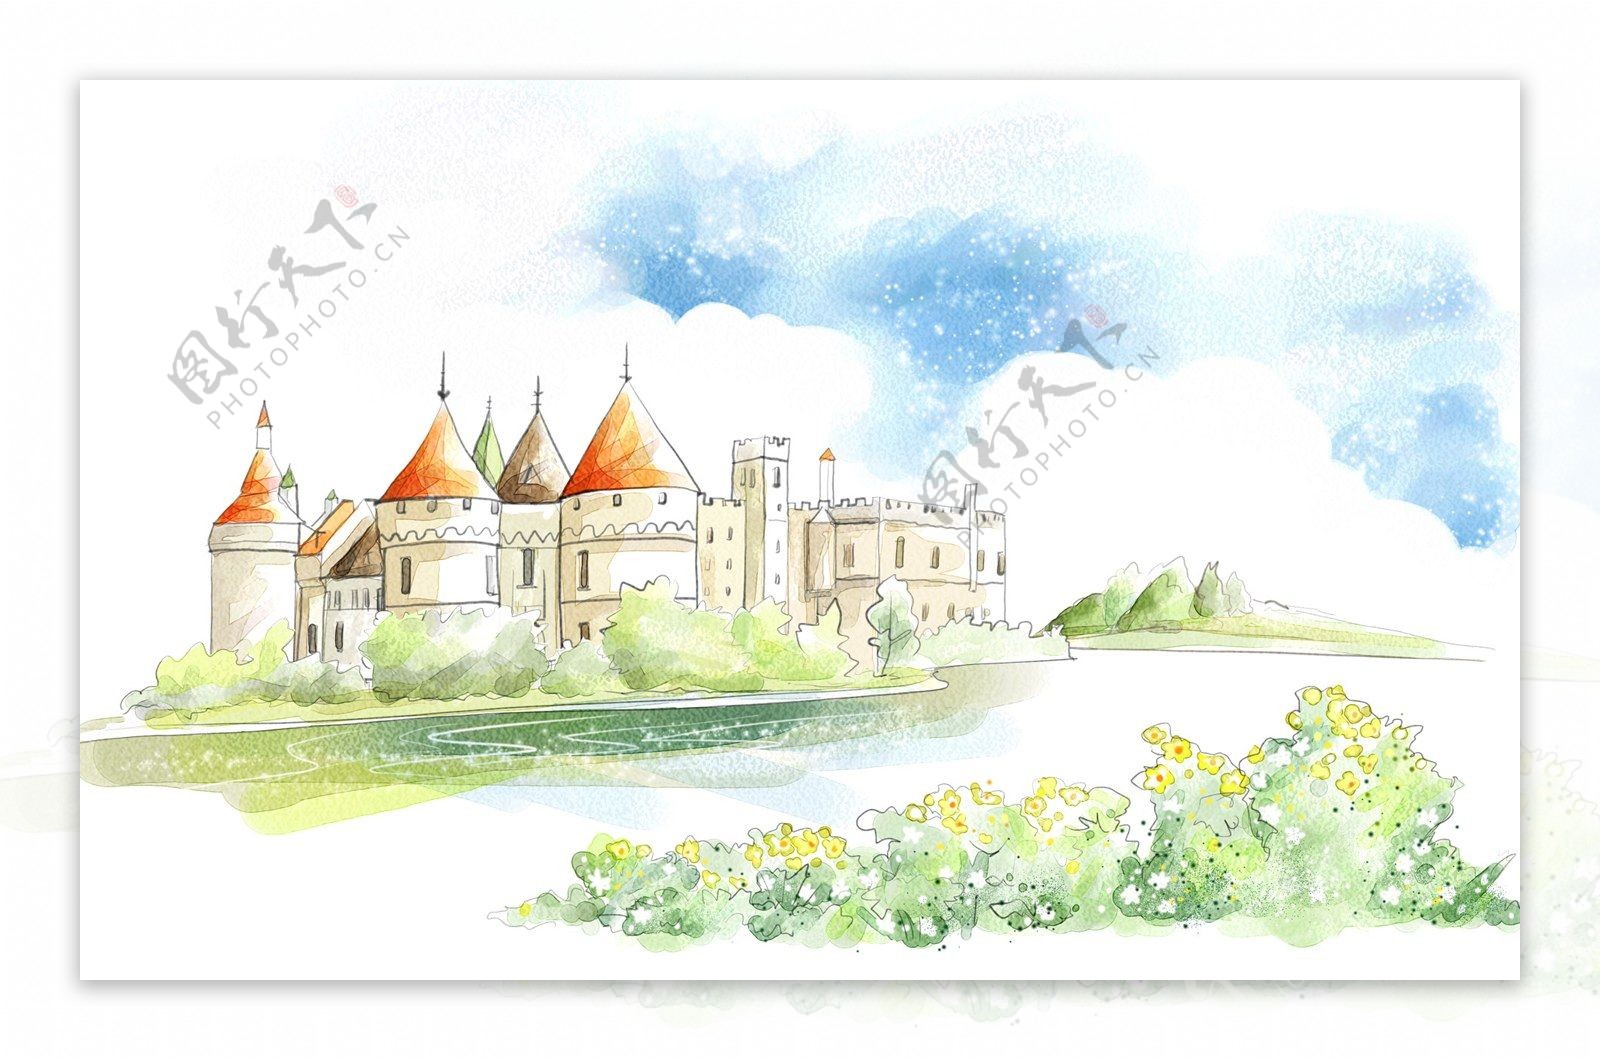 韩风手绘水彩插画城堡